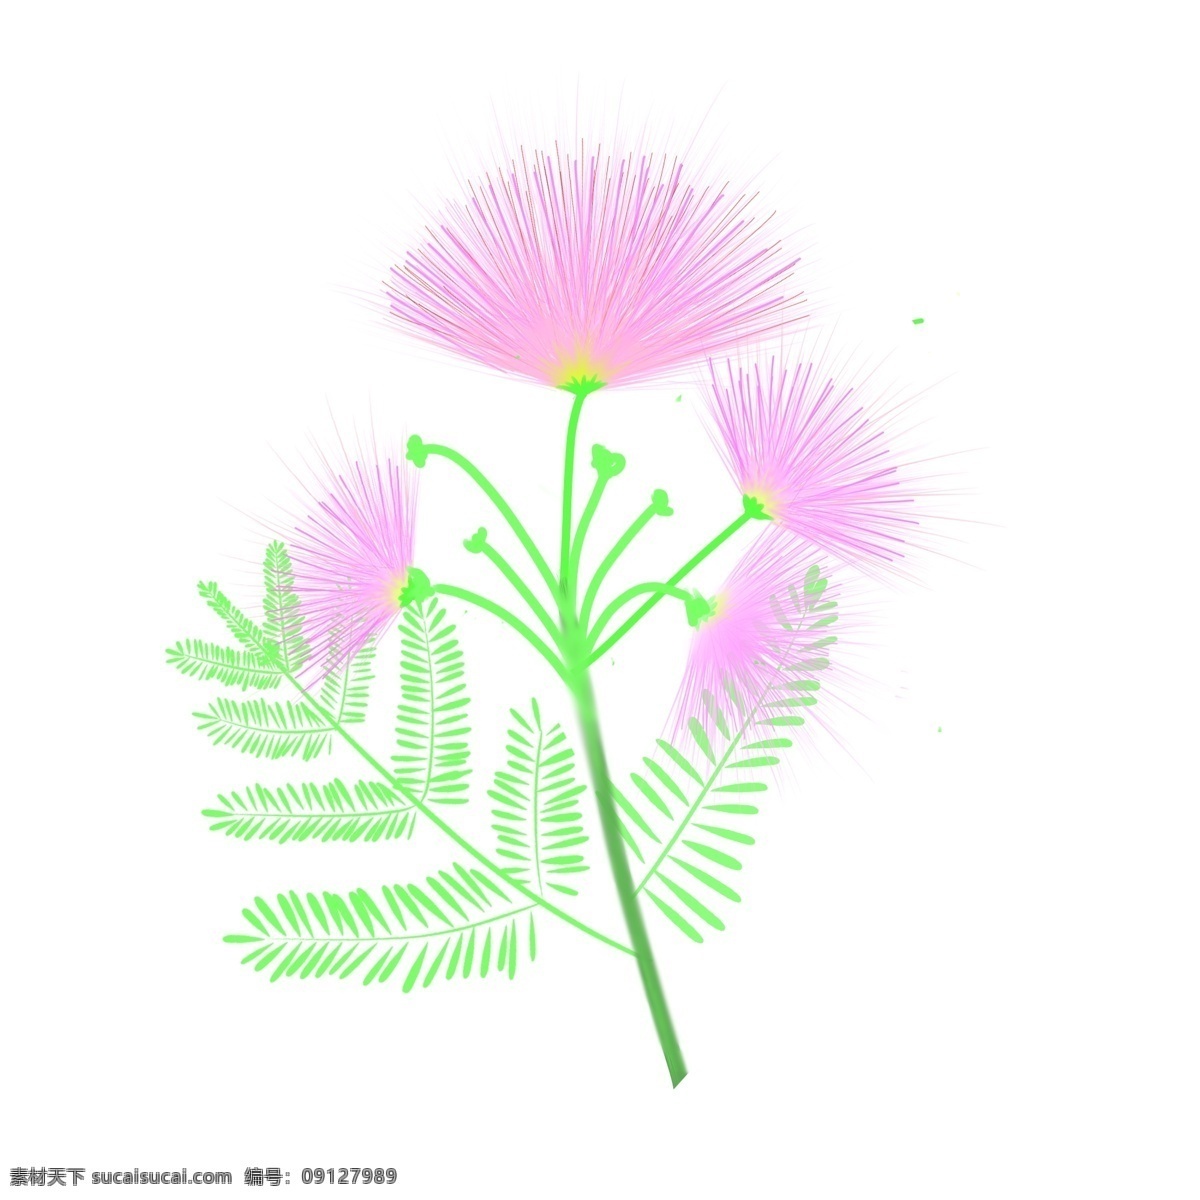 原创 手绘 粉色 合欢花 免 扣 元素 粉色花朵 免扣图 花朵 绿叶 合欢花枝